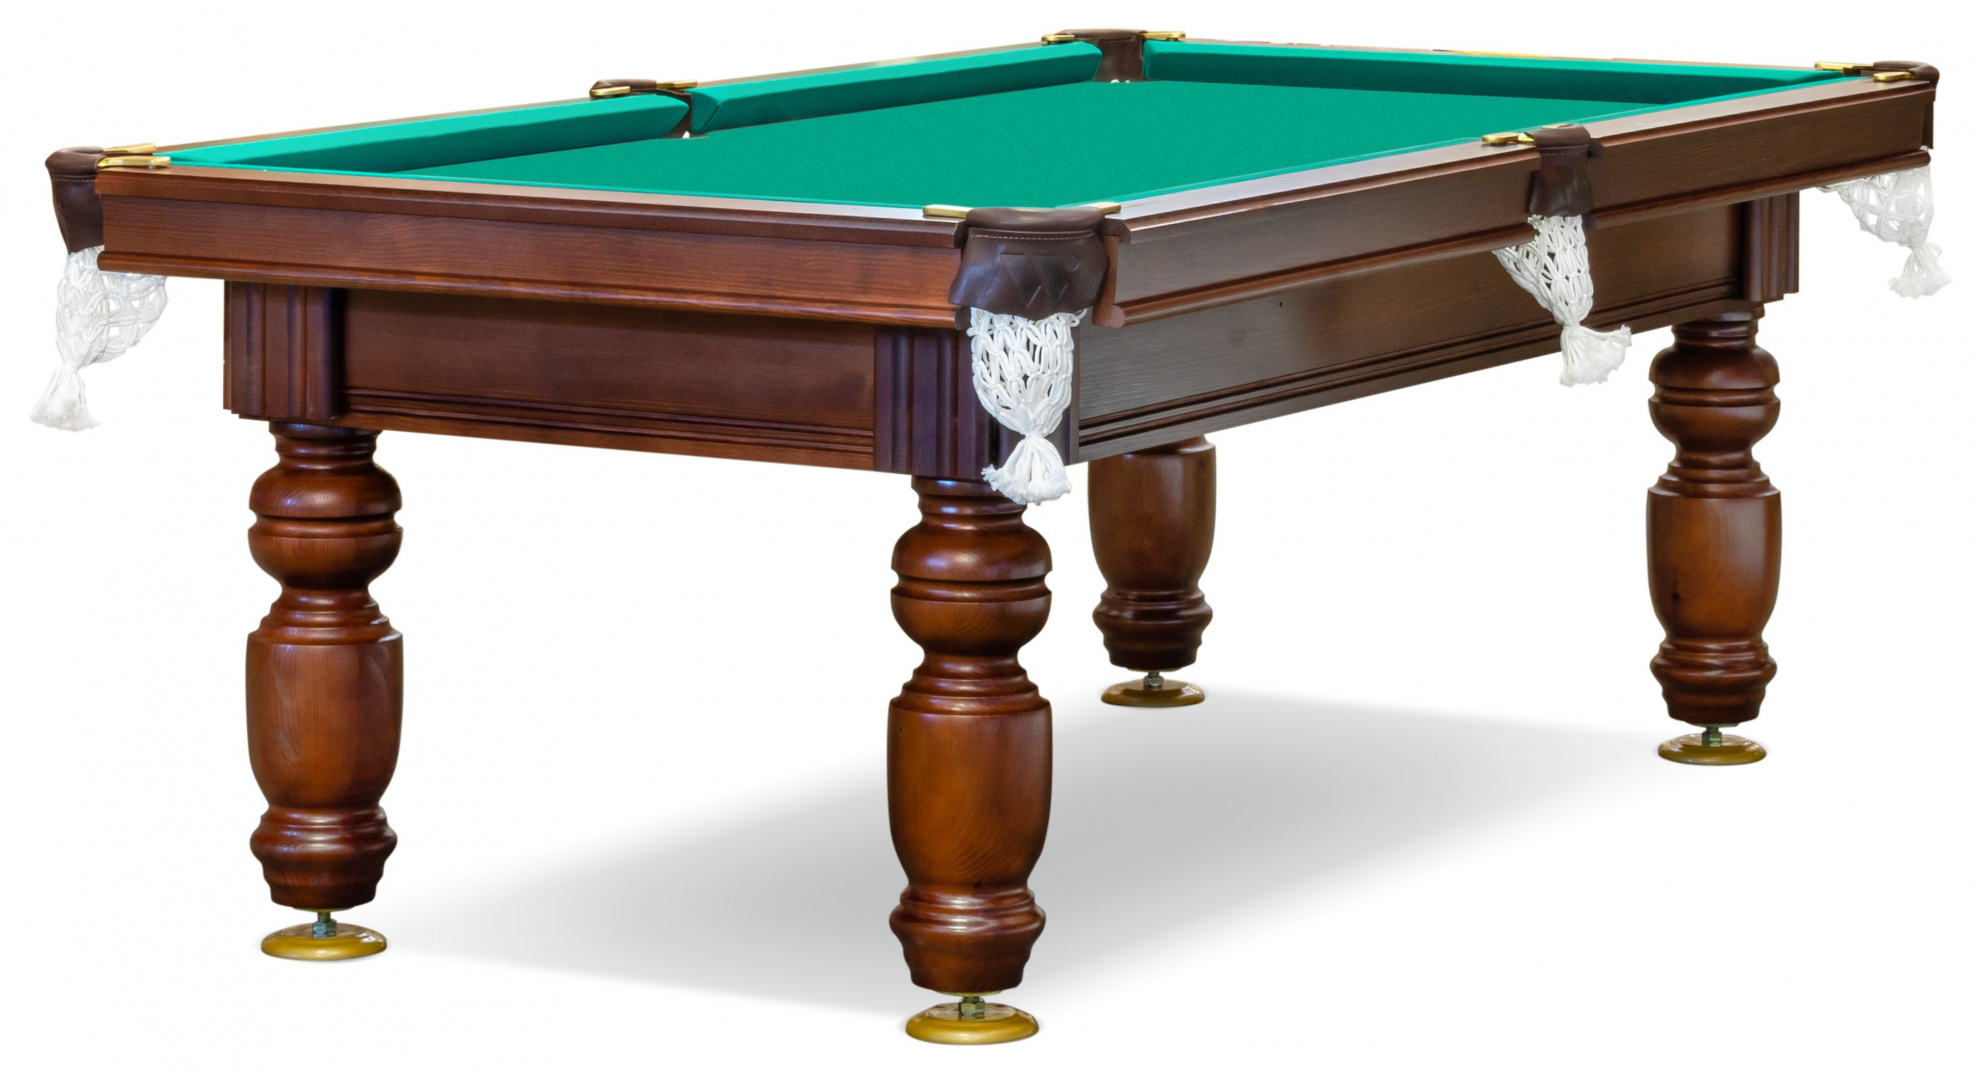 Бильярдный стол для русского бильярда Weekend Billiard Ладога (7 футов, шары 60мм, камень 25мм)